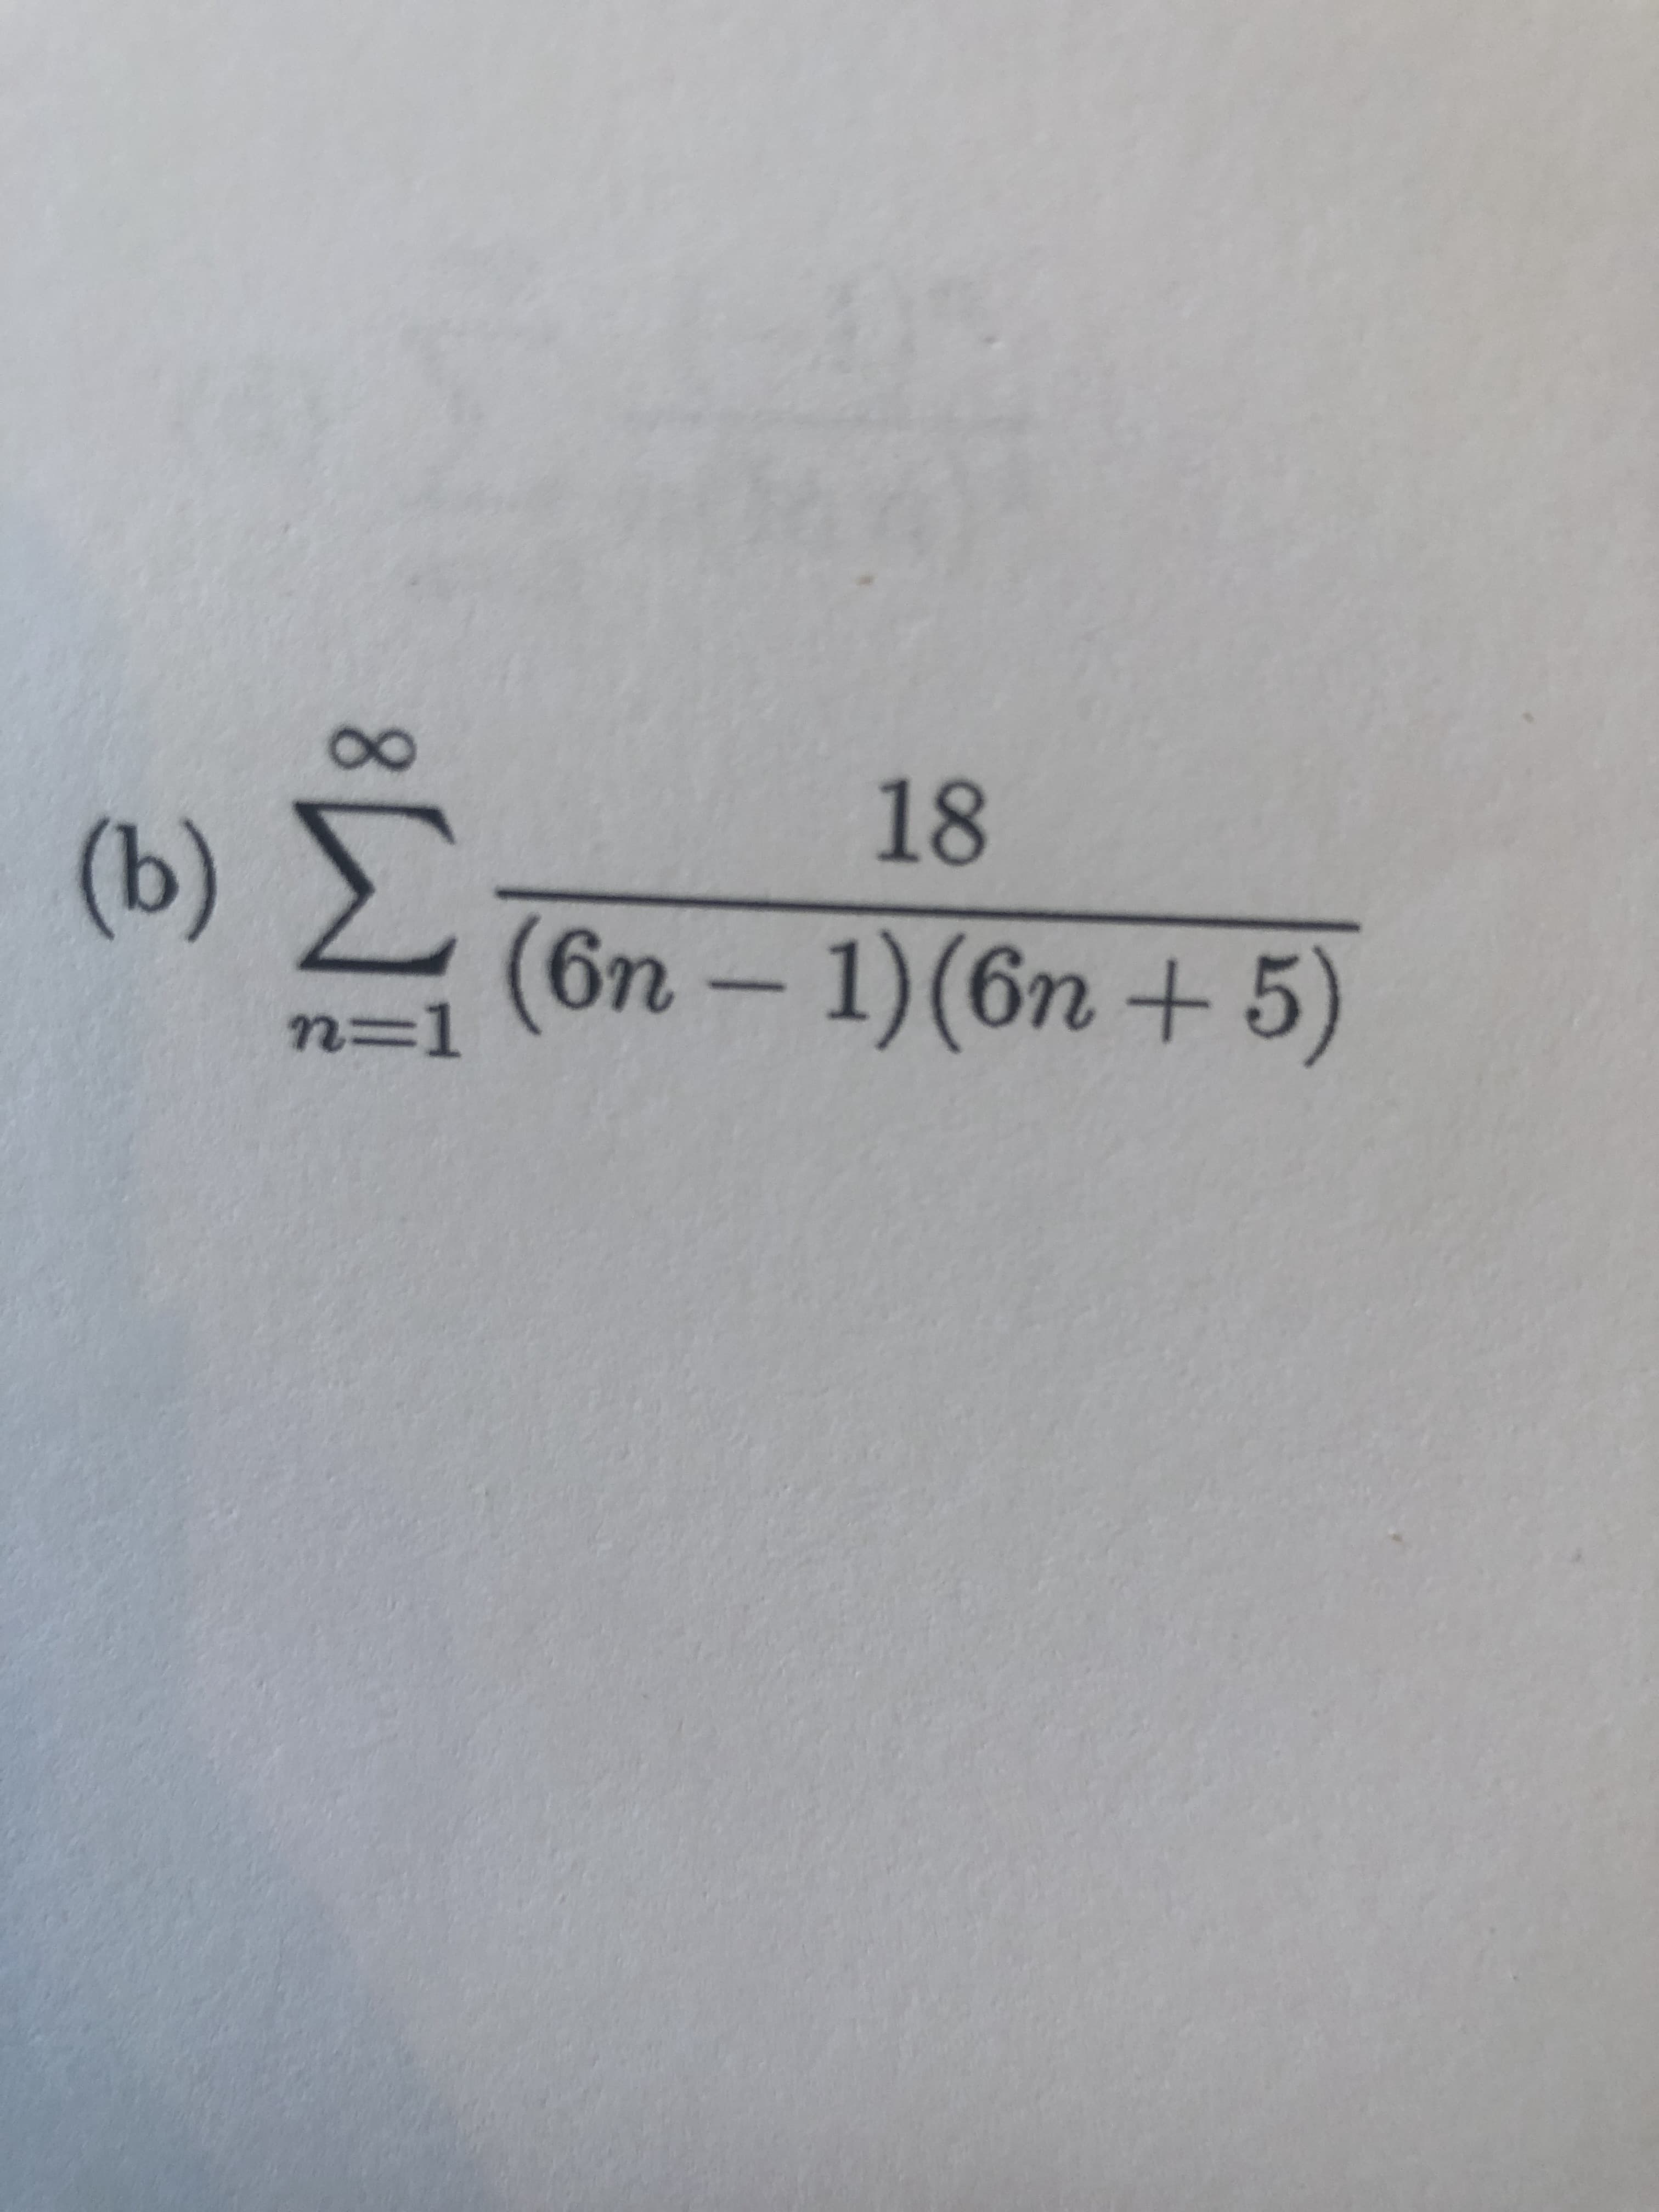 18
(b)
(6n-1)(6n+5)
n=D1
